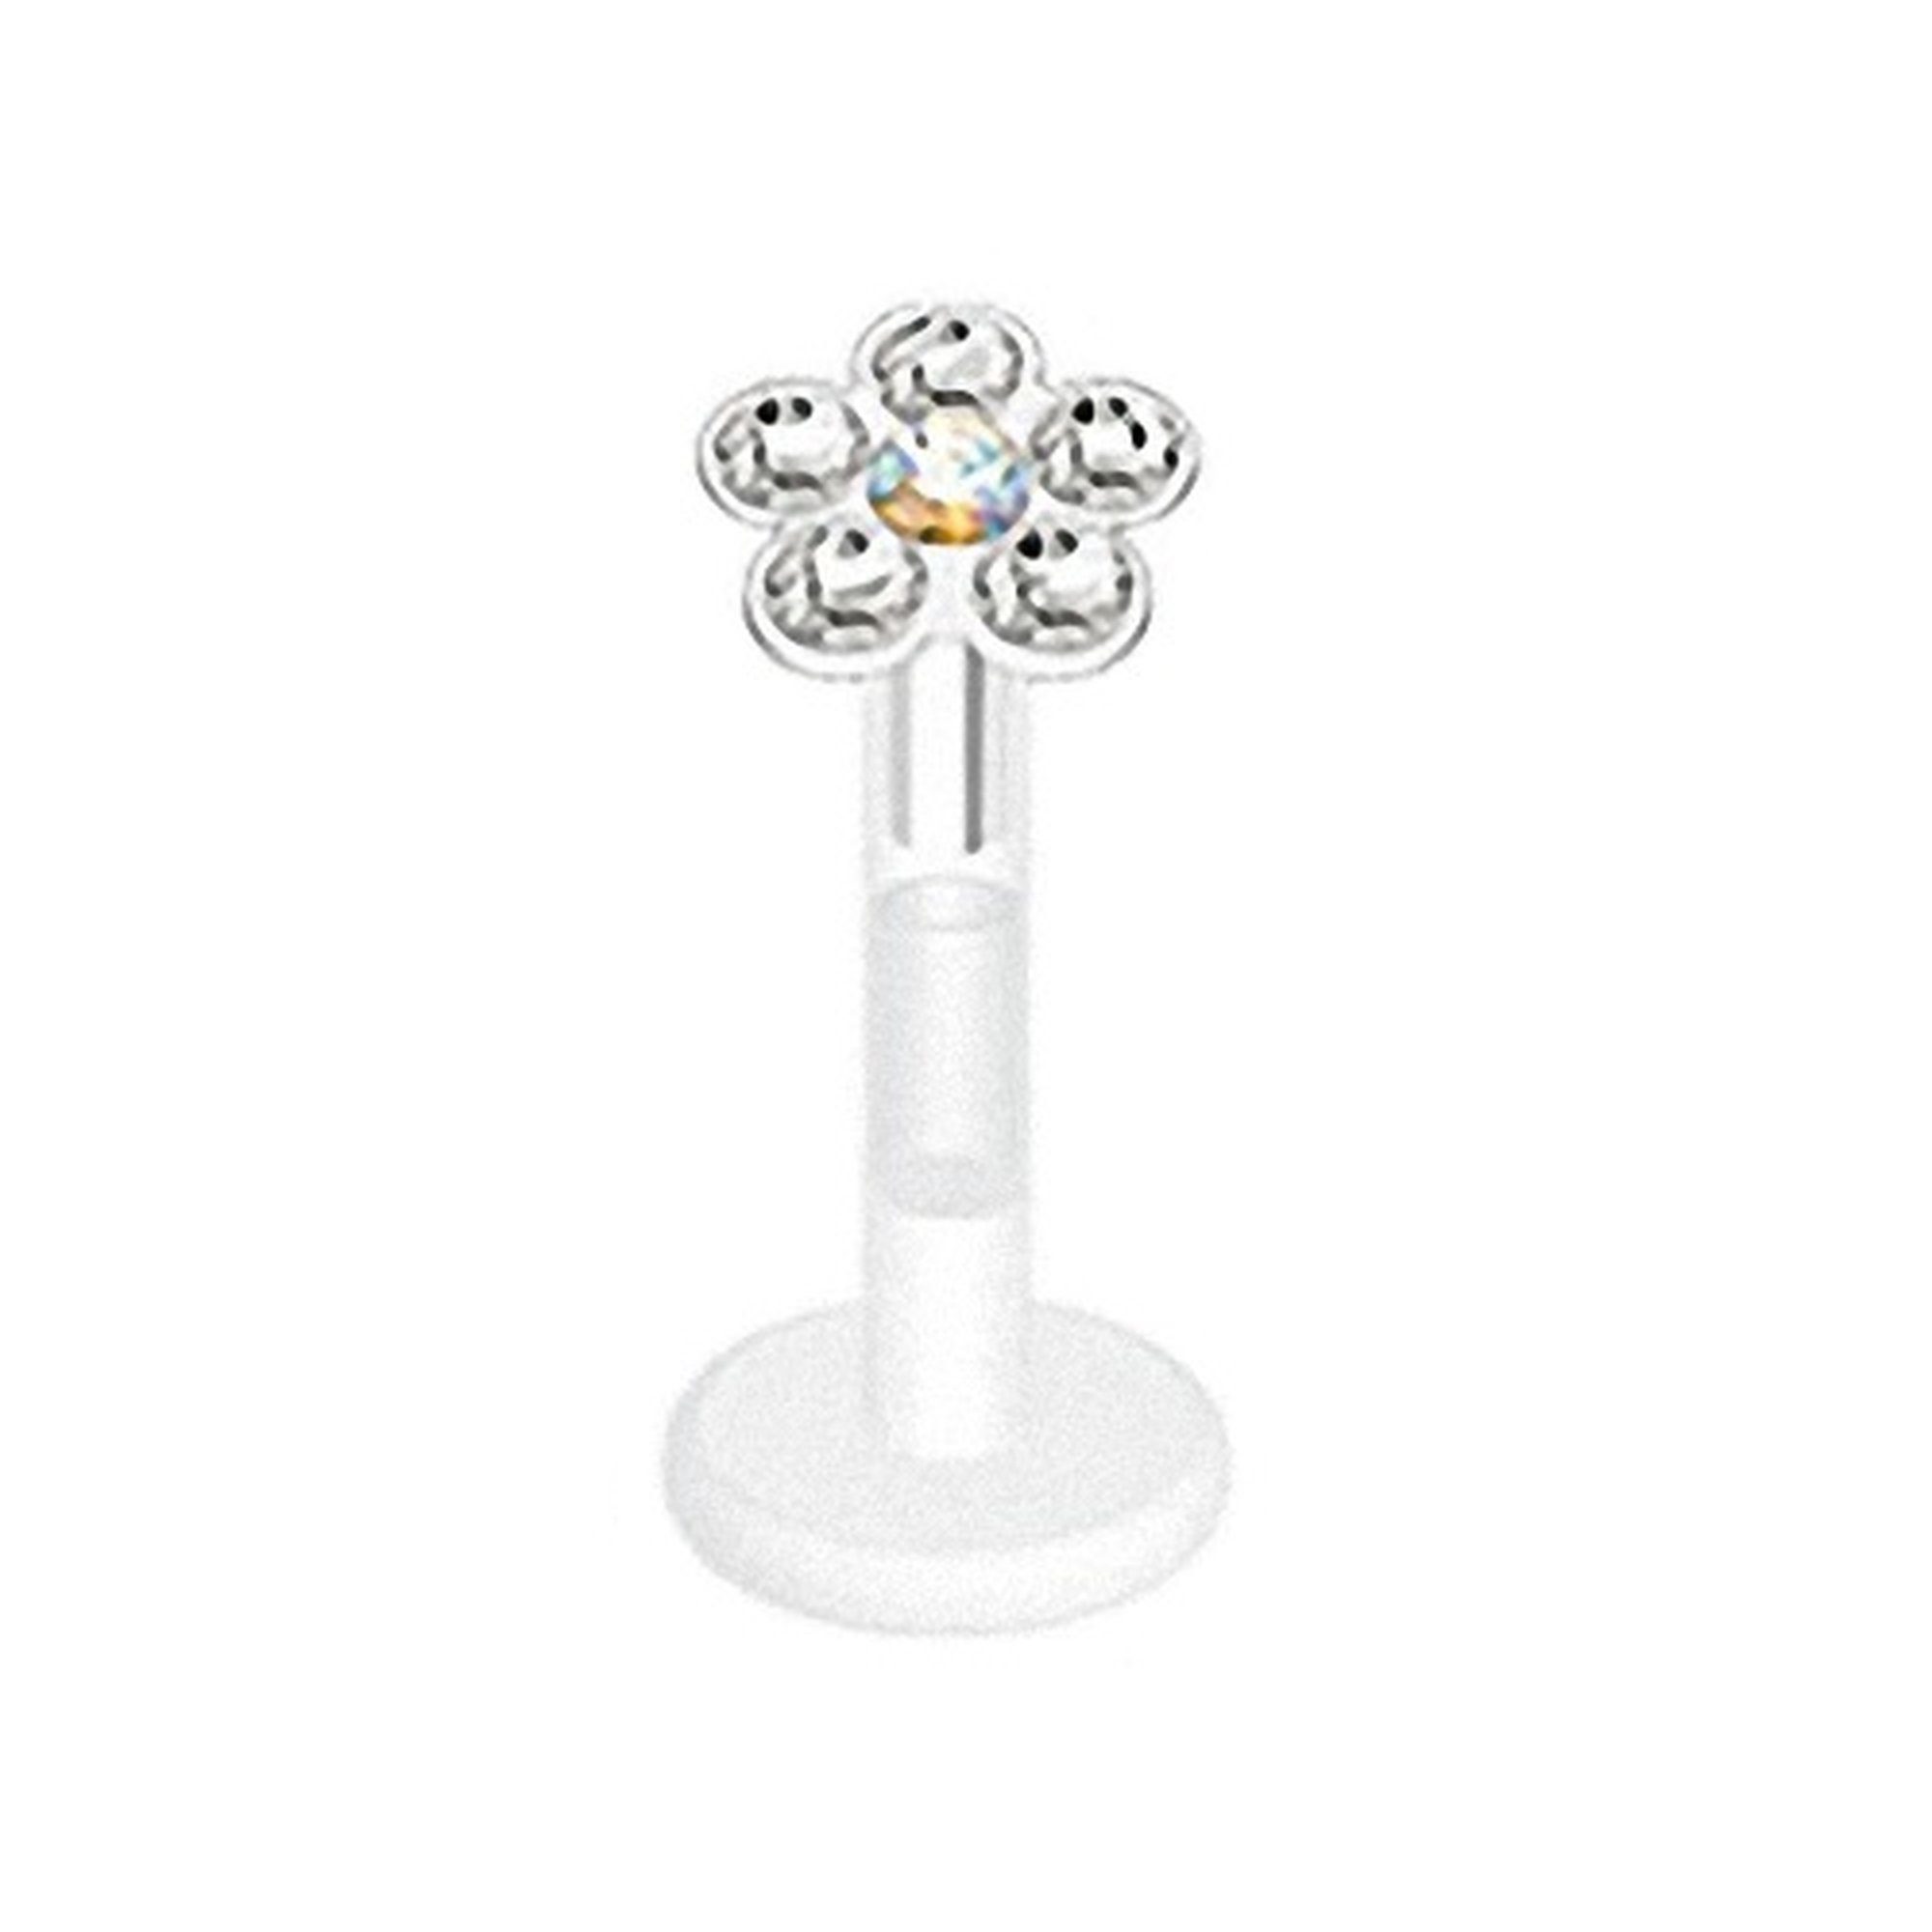 Taffstyle Piercing-Set Piercing Bioflex Monroe Multi Kristall Blume 8mm, Lippenpiercing Lippe Schmuck Bioflex Monroe Multi Kristall Blume 8mm